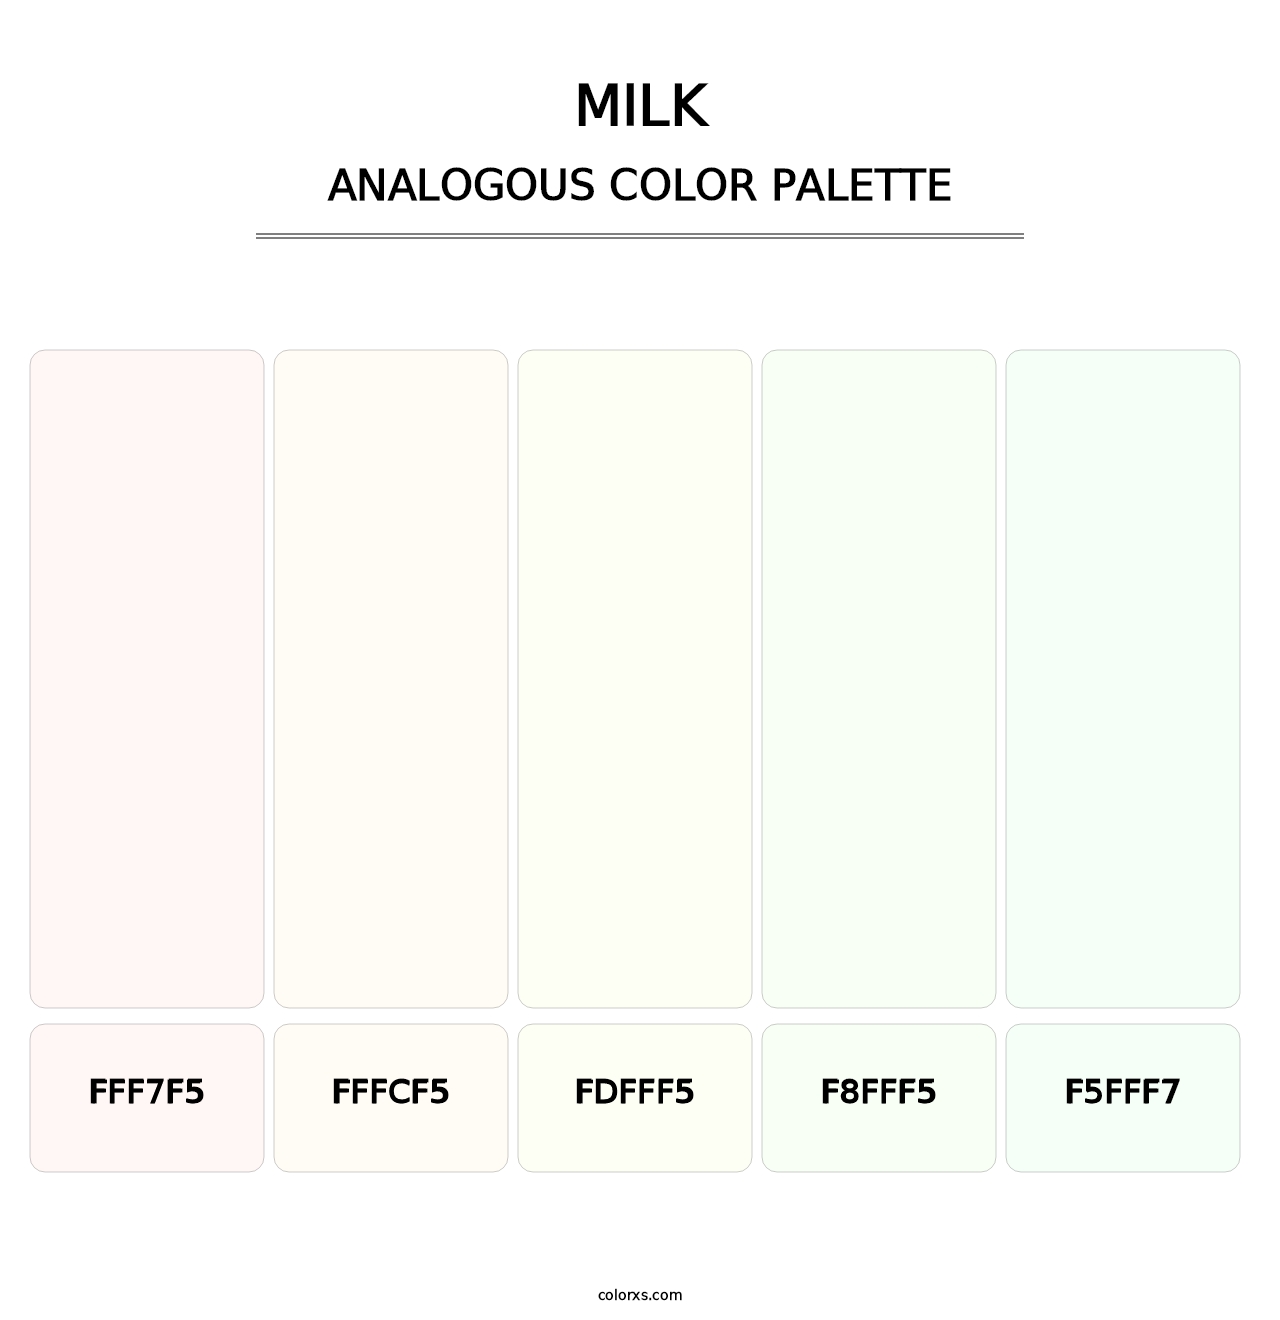 Milk - Analogous Color Palette